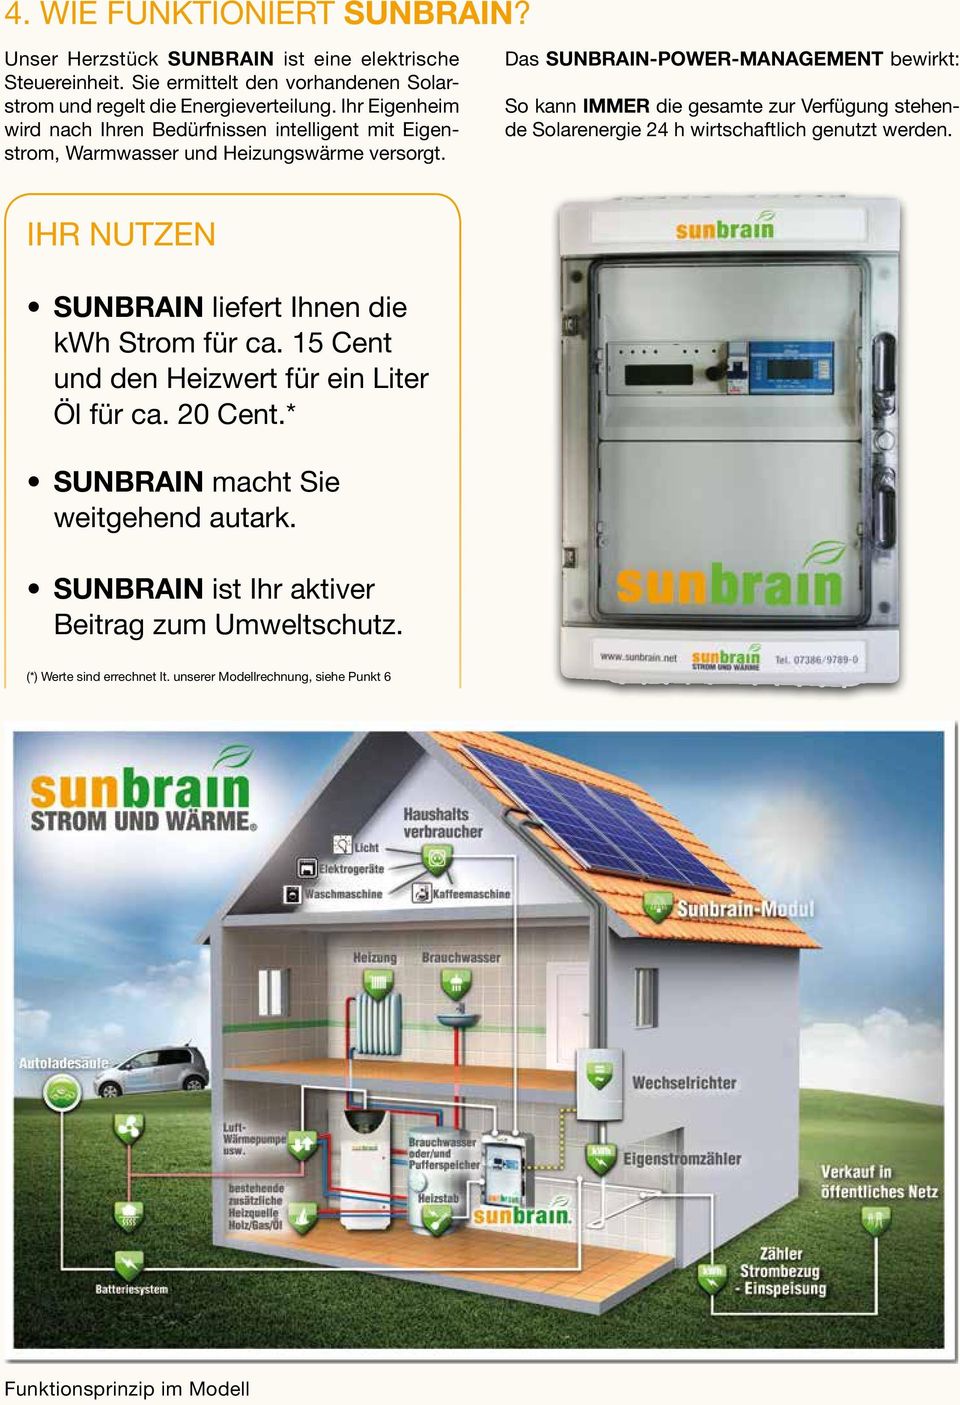 Das SUNBRAIN-POWER-MANAGEMENT bewirkt: So kann IMMER die gesamte zur Verfügung stehende Solarenergie 24 h wirtschaftlich genutzt werden.